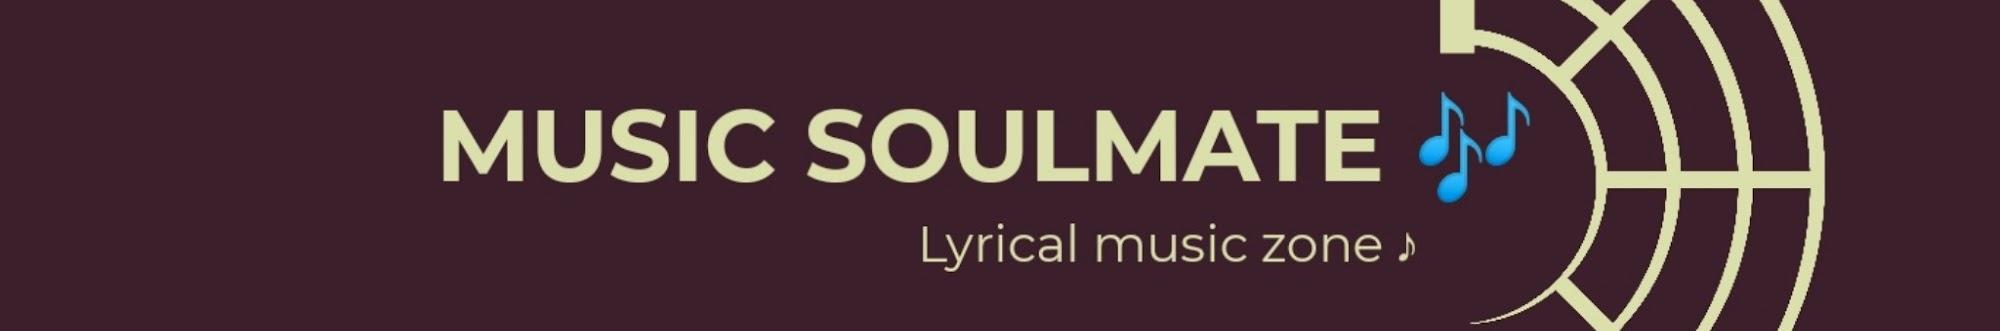 Music Soulmate